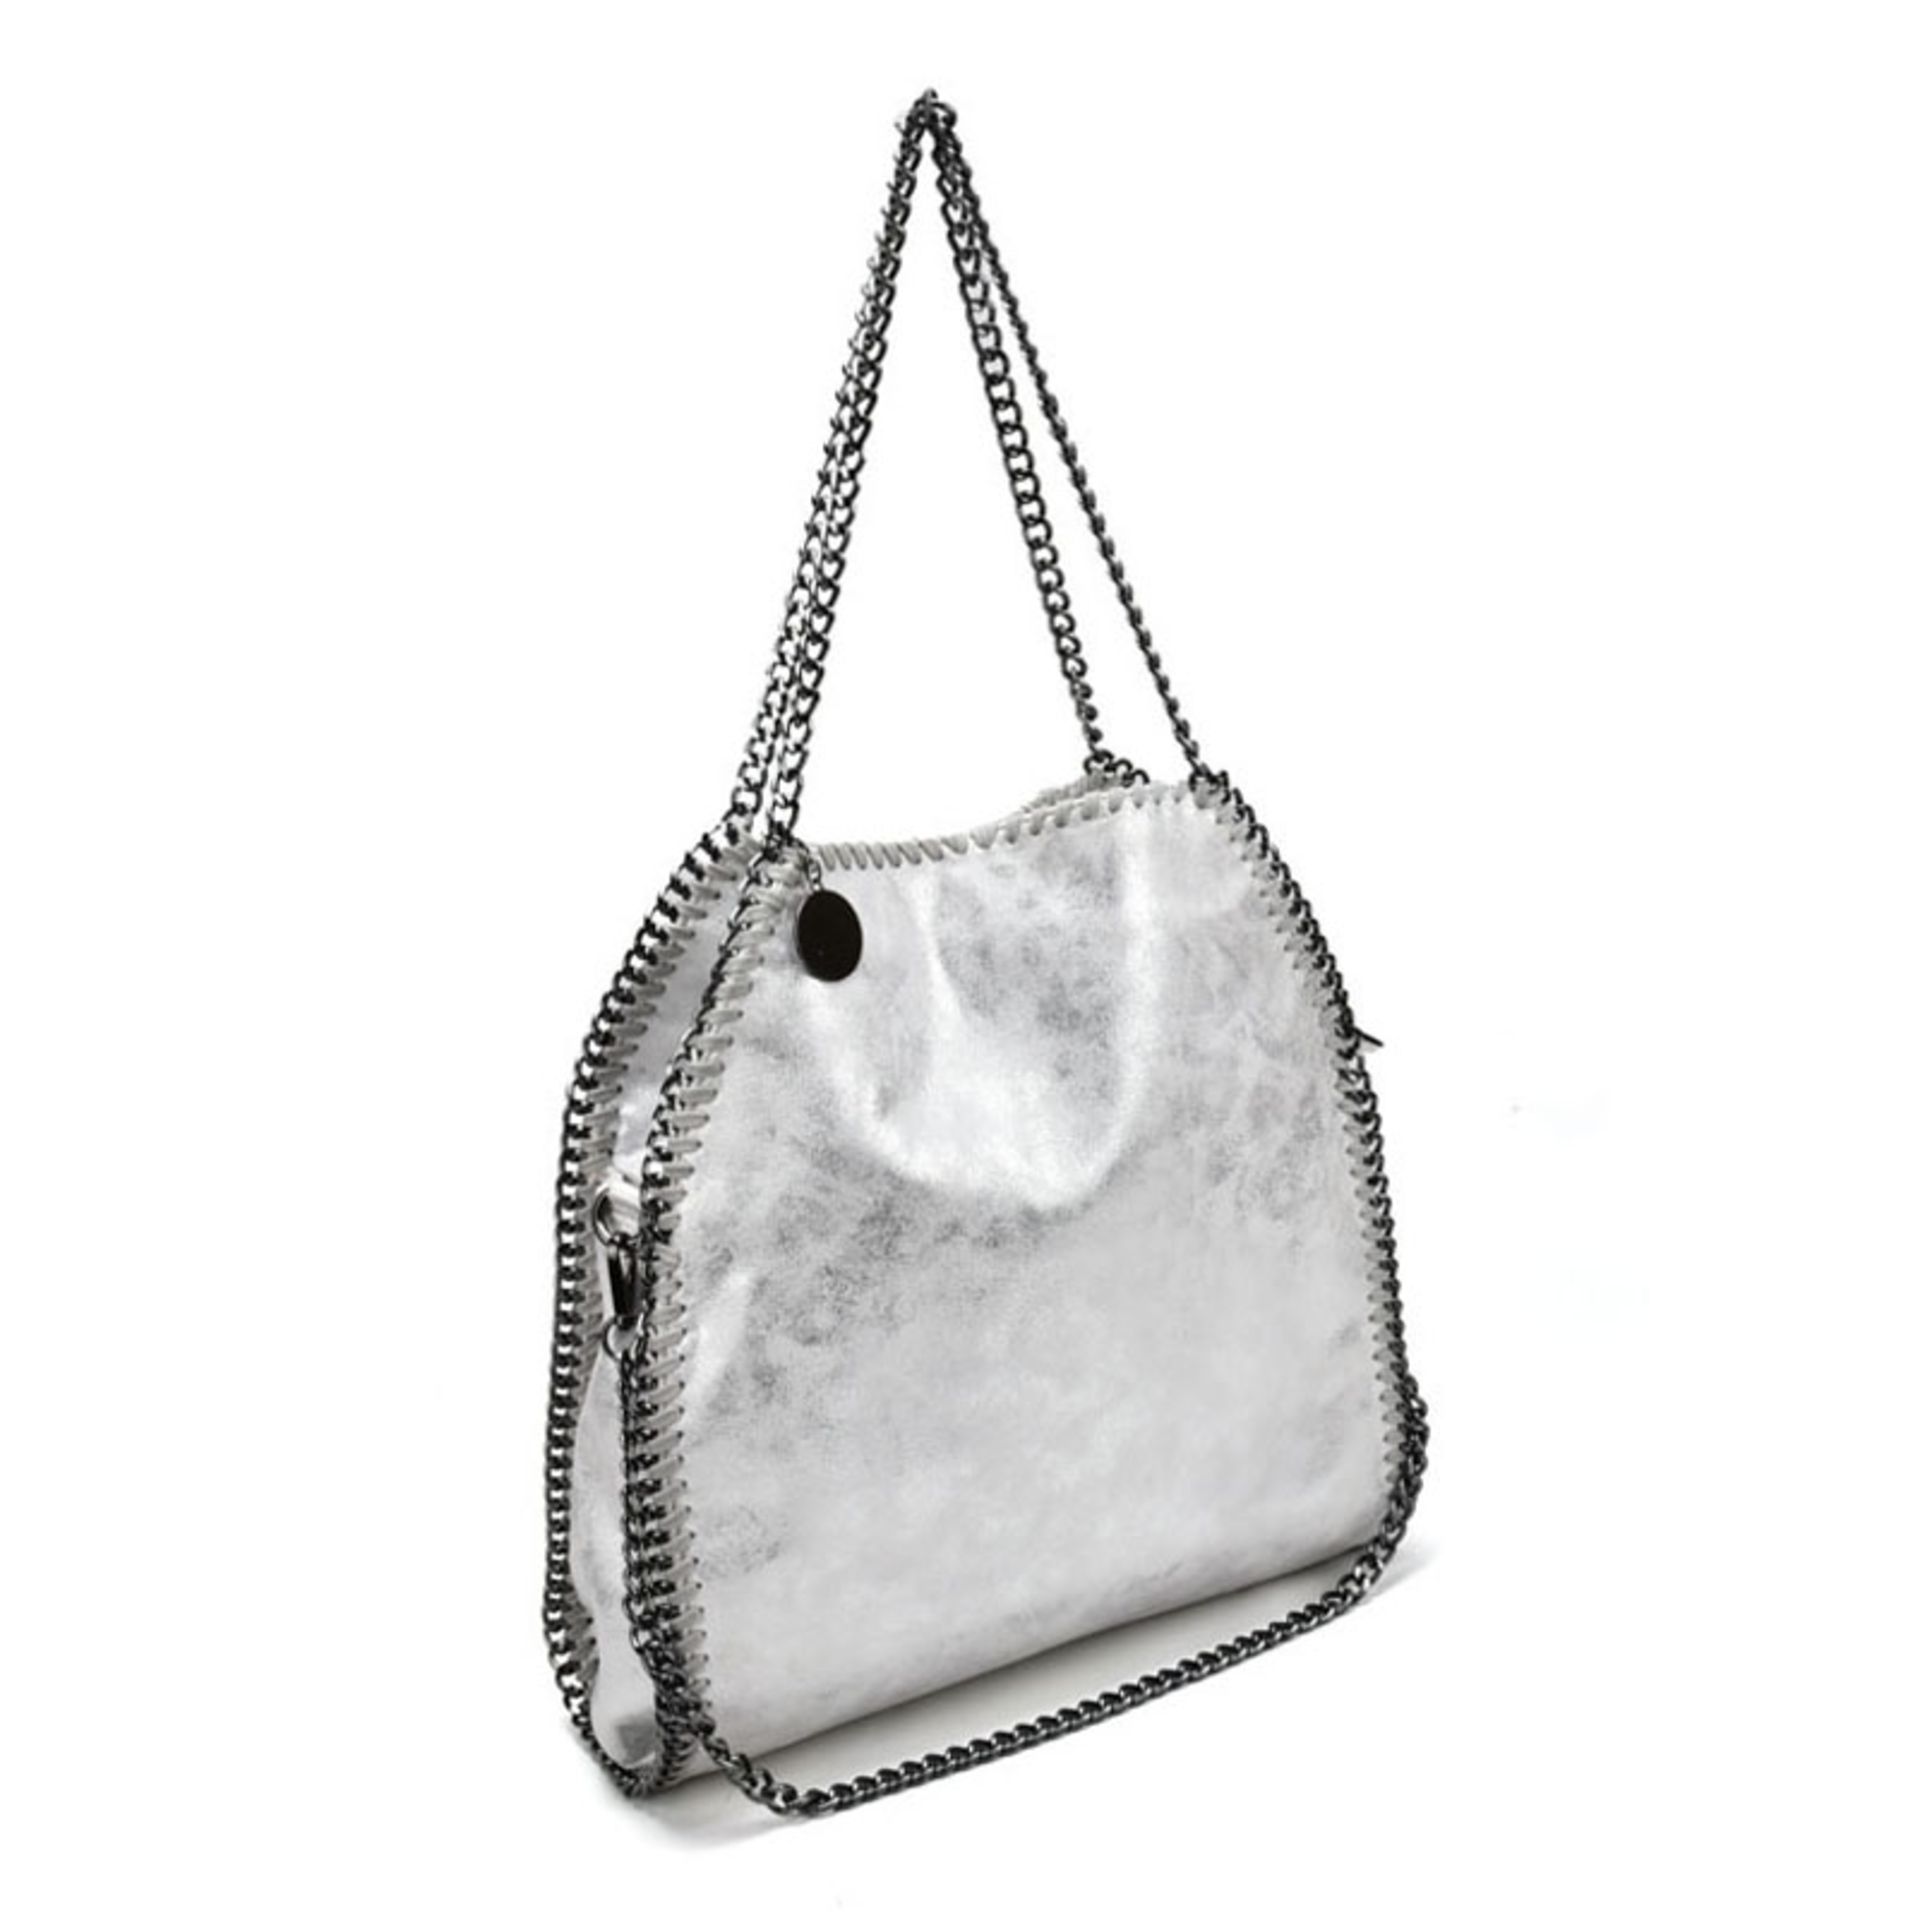 SILVER - Shoulder Bag With Chain Handel